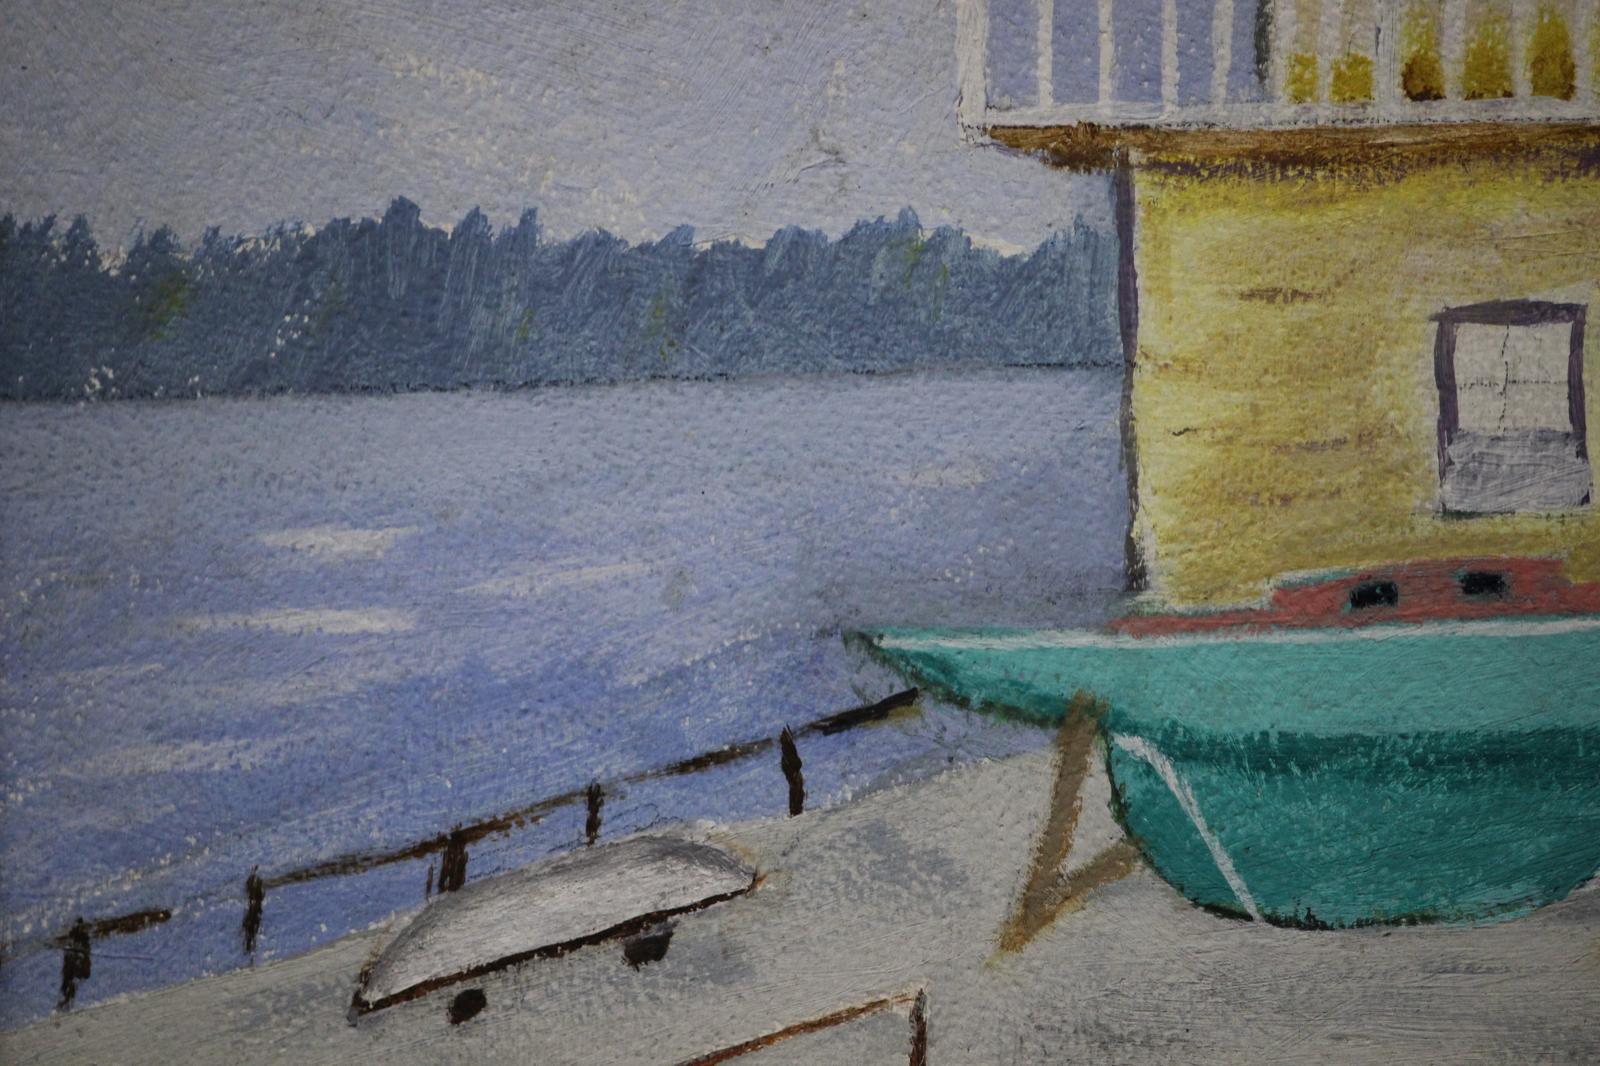 Classic New England Yacht club boathouse scene

Oil on canvas

1970s

Art Sz: 17 1/2